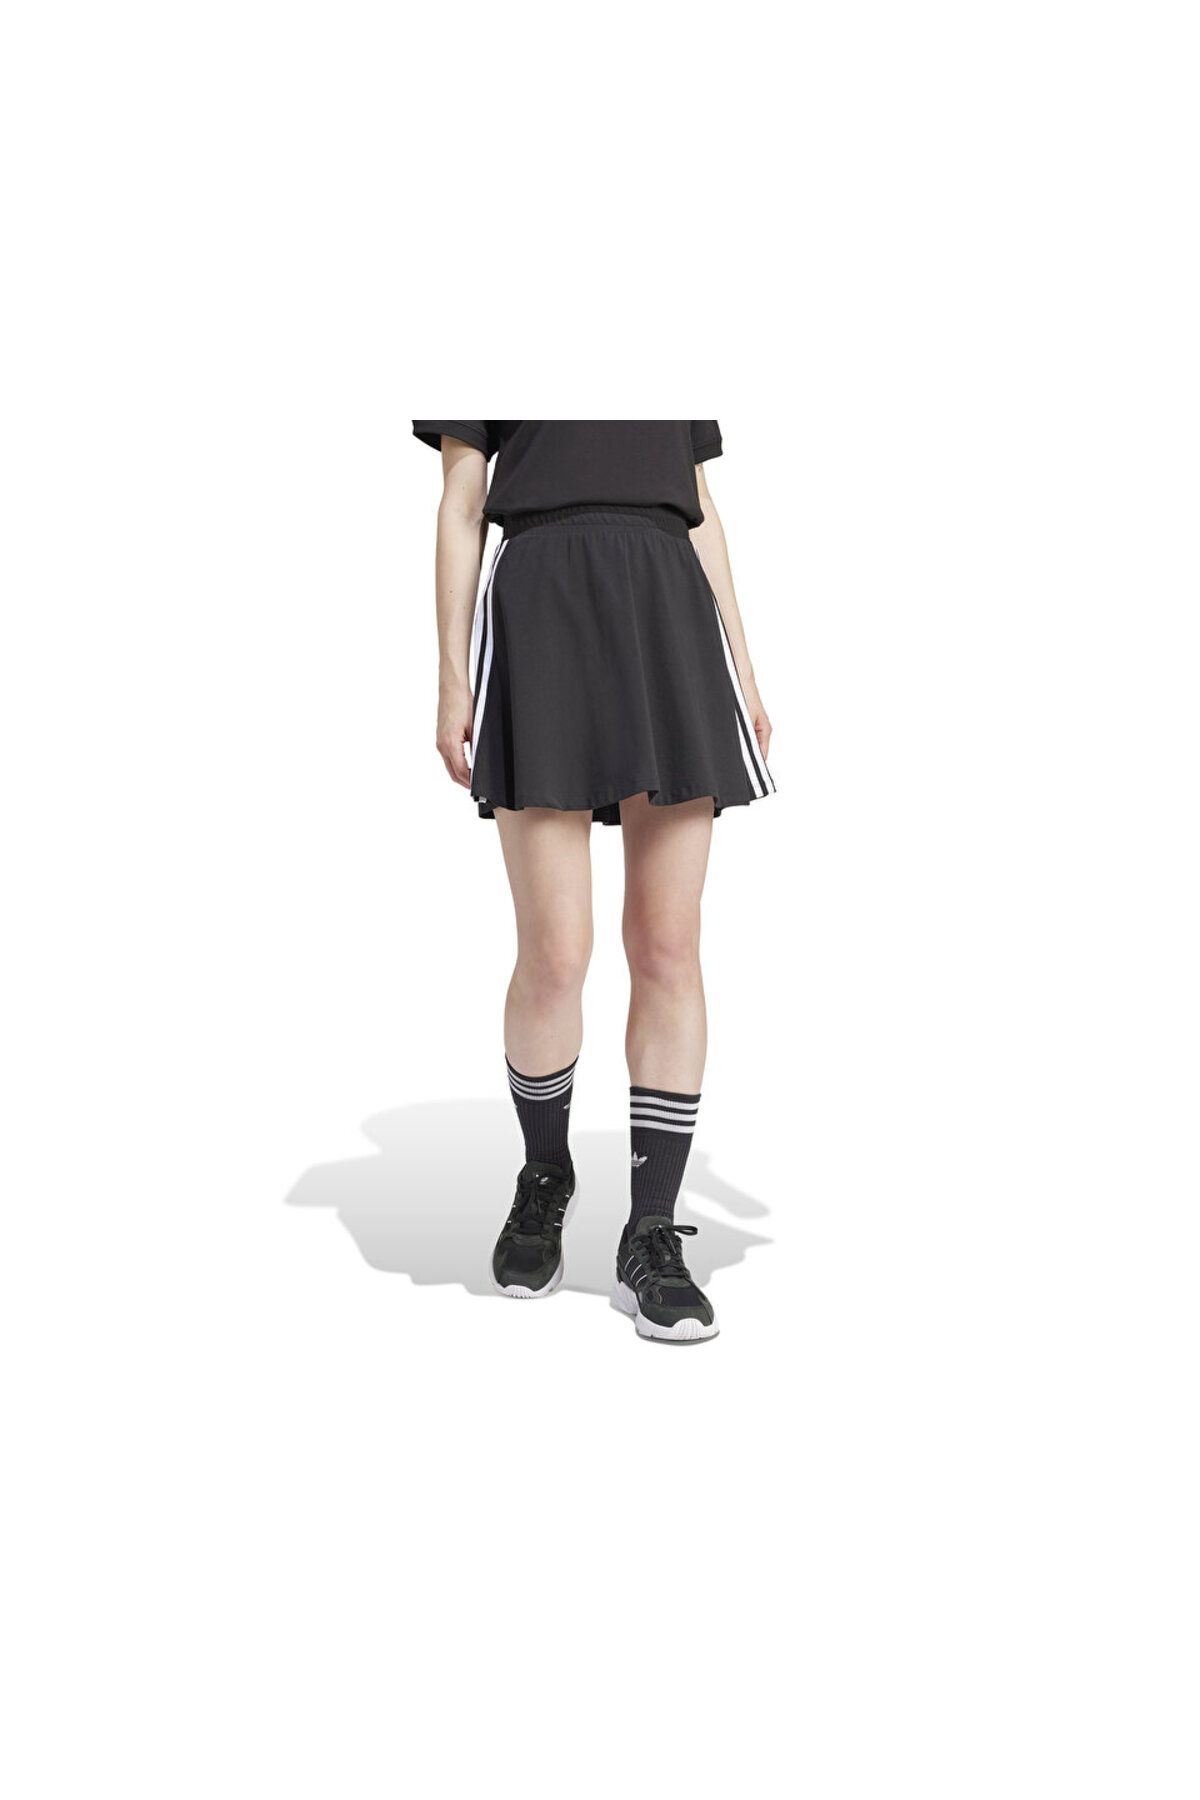 adidas 3 S Skirt Kadın Günlük Etek IU2526 Siyah